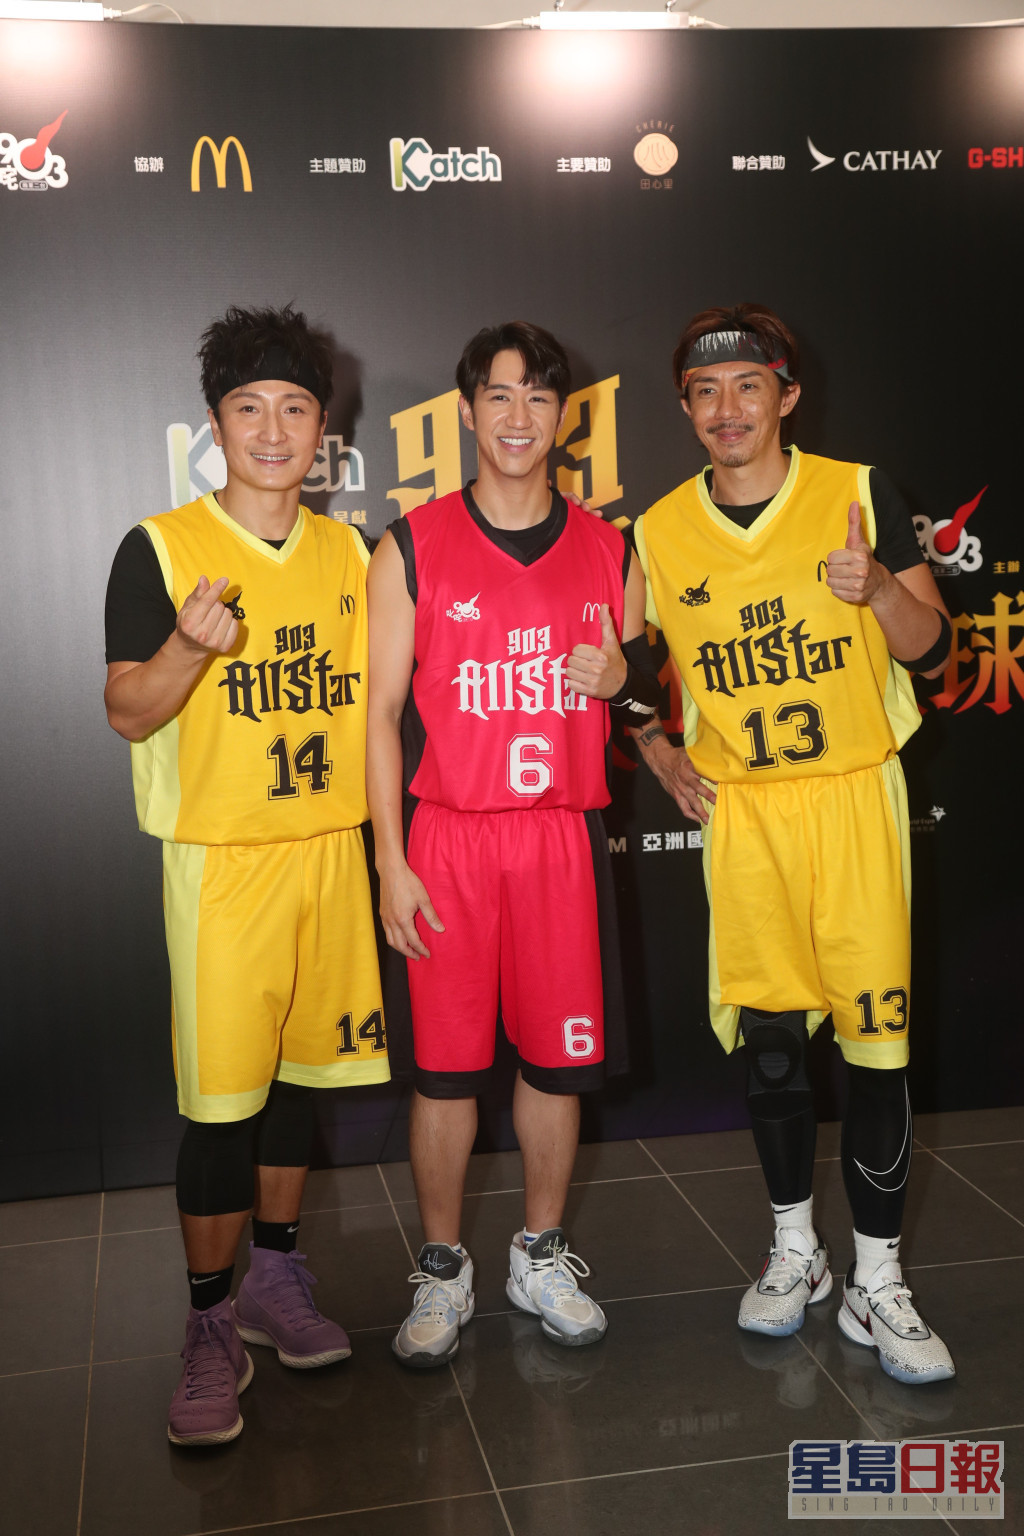 张继聪（阿聪）、方力申（小方）及冯允谦（Jay）昨日(11日)到机场博览馆分别代表歌星队及DJ队的篮球赛。